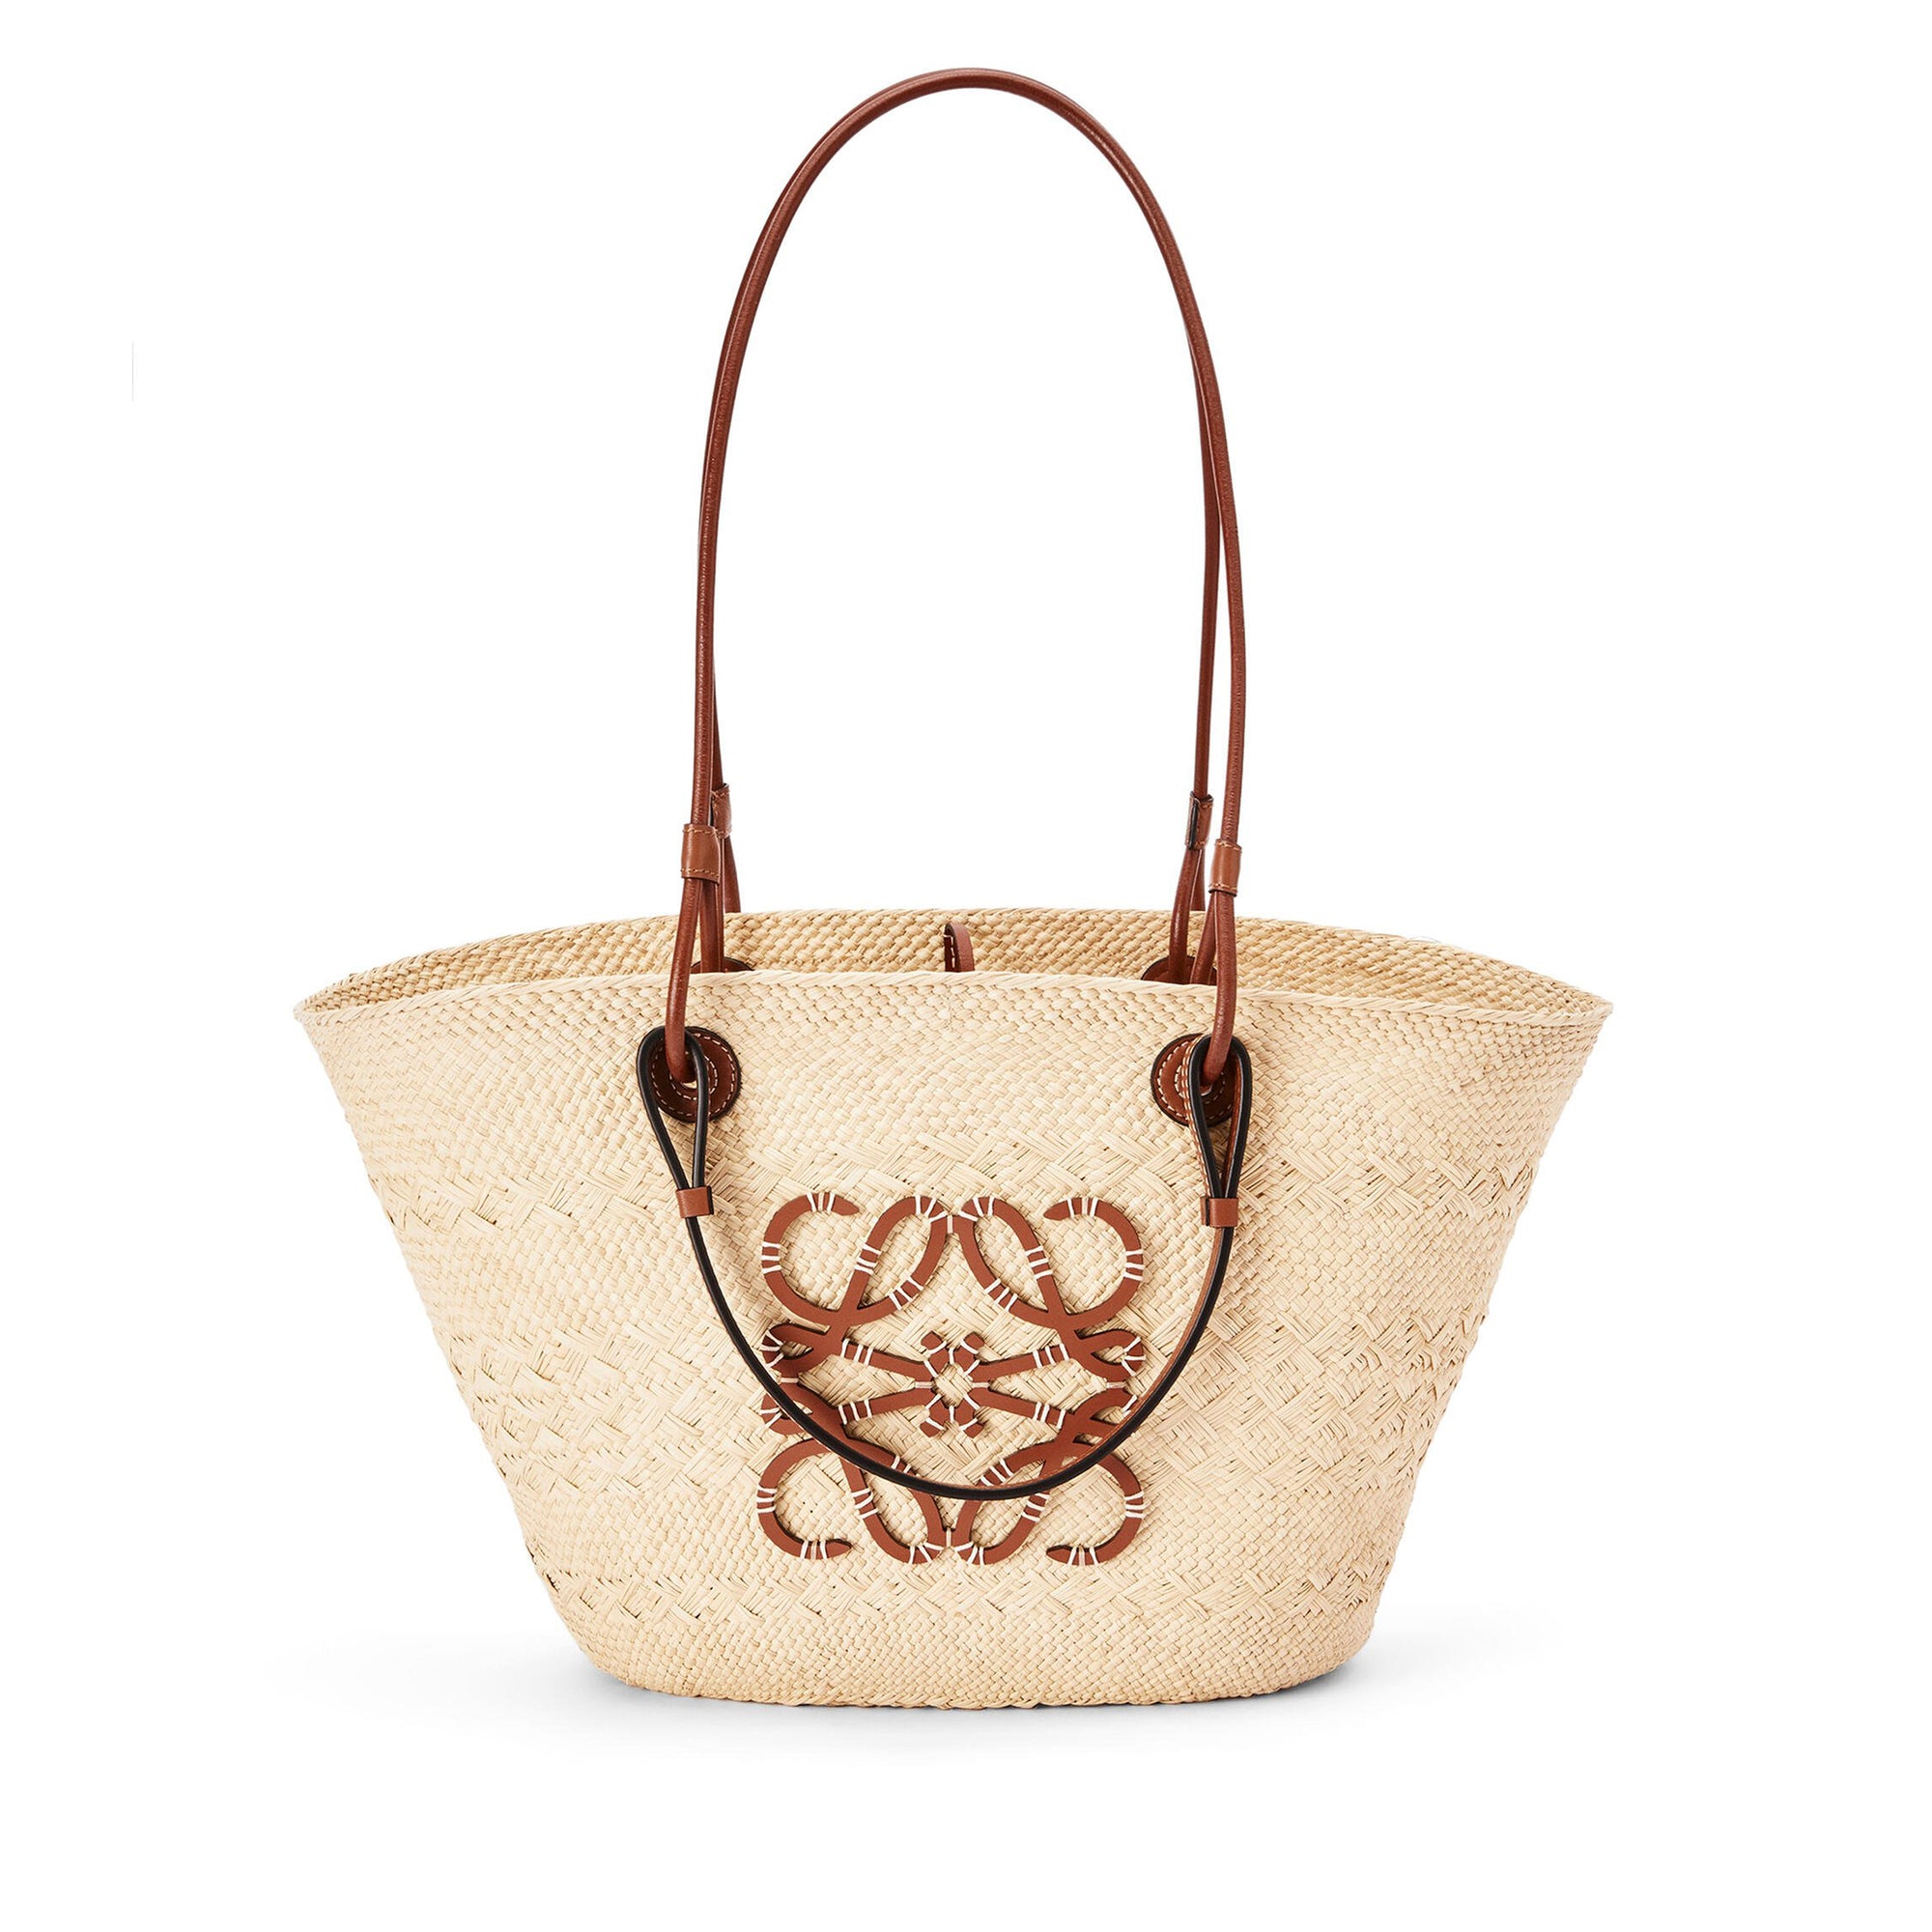 Loewe - Women’s Anagram Basket Bag - (Natural/Tan) view 1